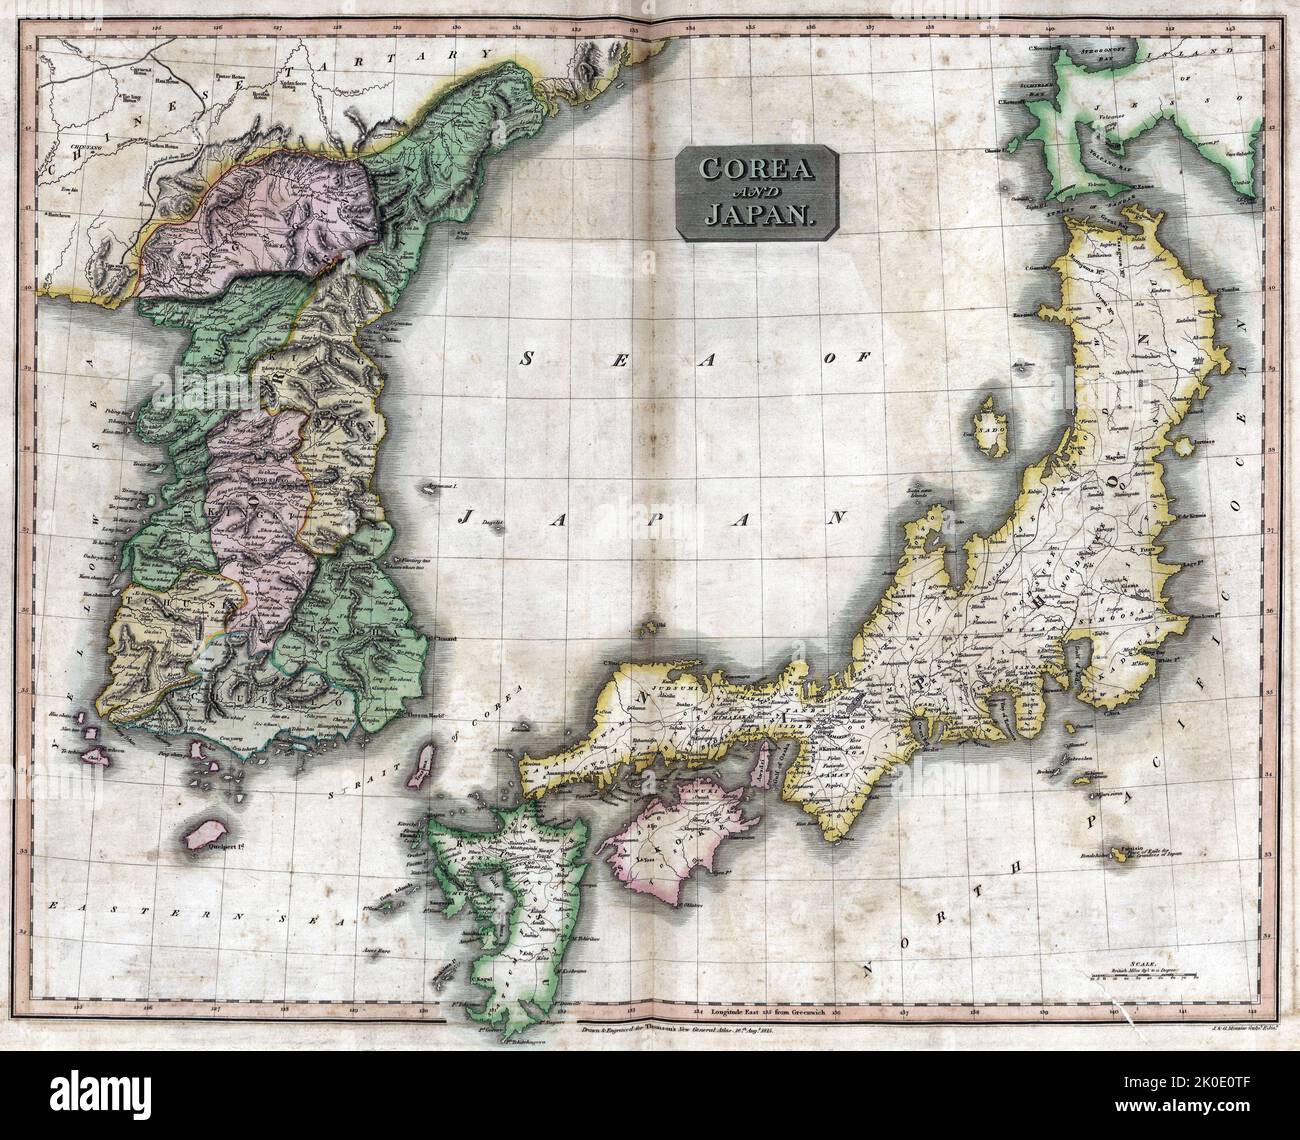 Europäische Karte, die Korea und Japan mit dem Japanischen Meer zeigt, c1875. Stockfoto